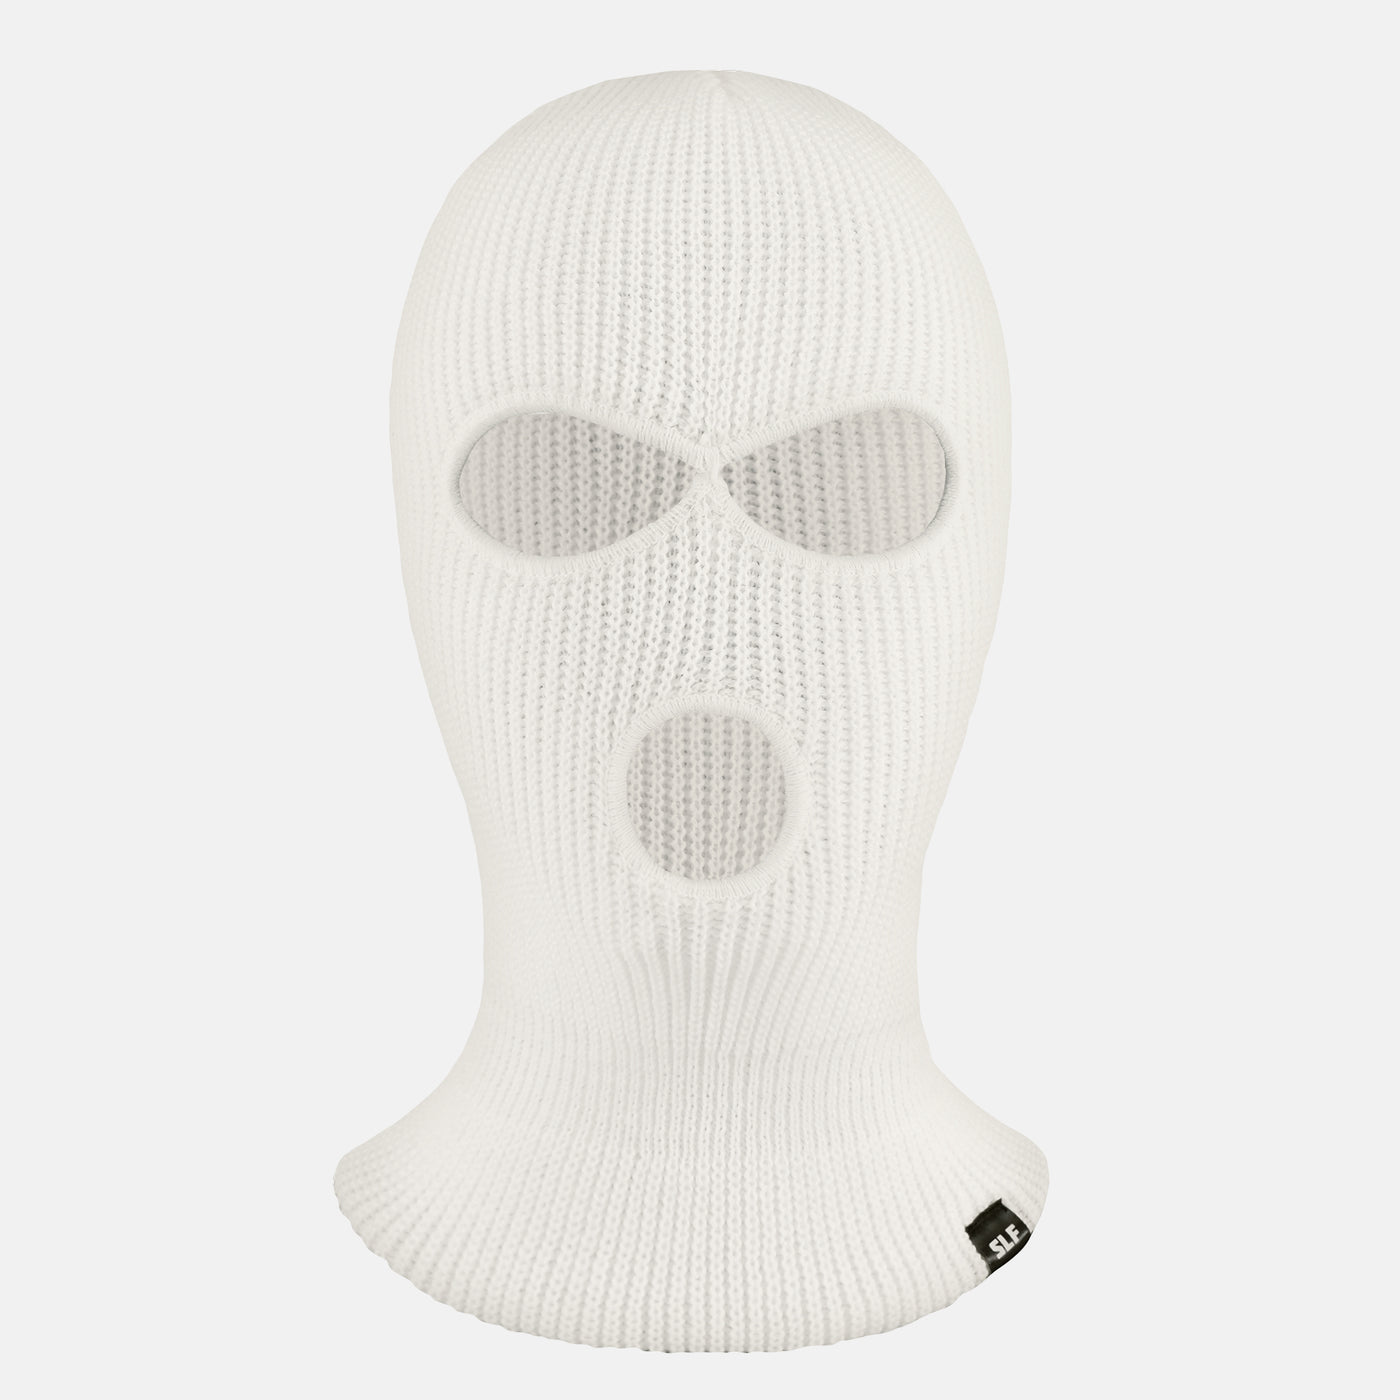 Basic White Ski Mask